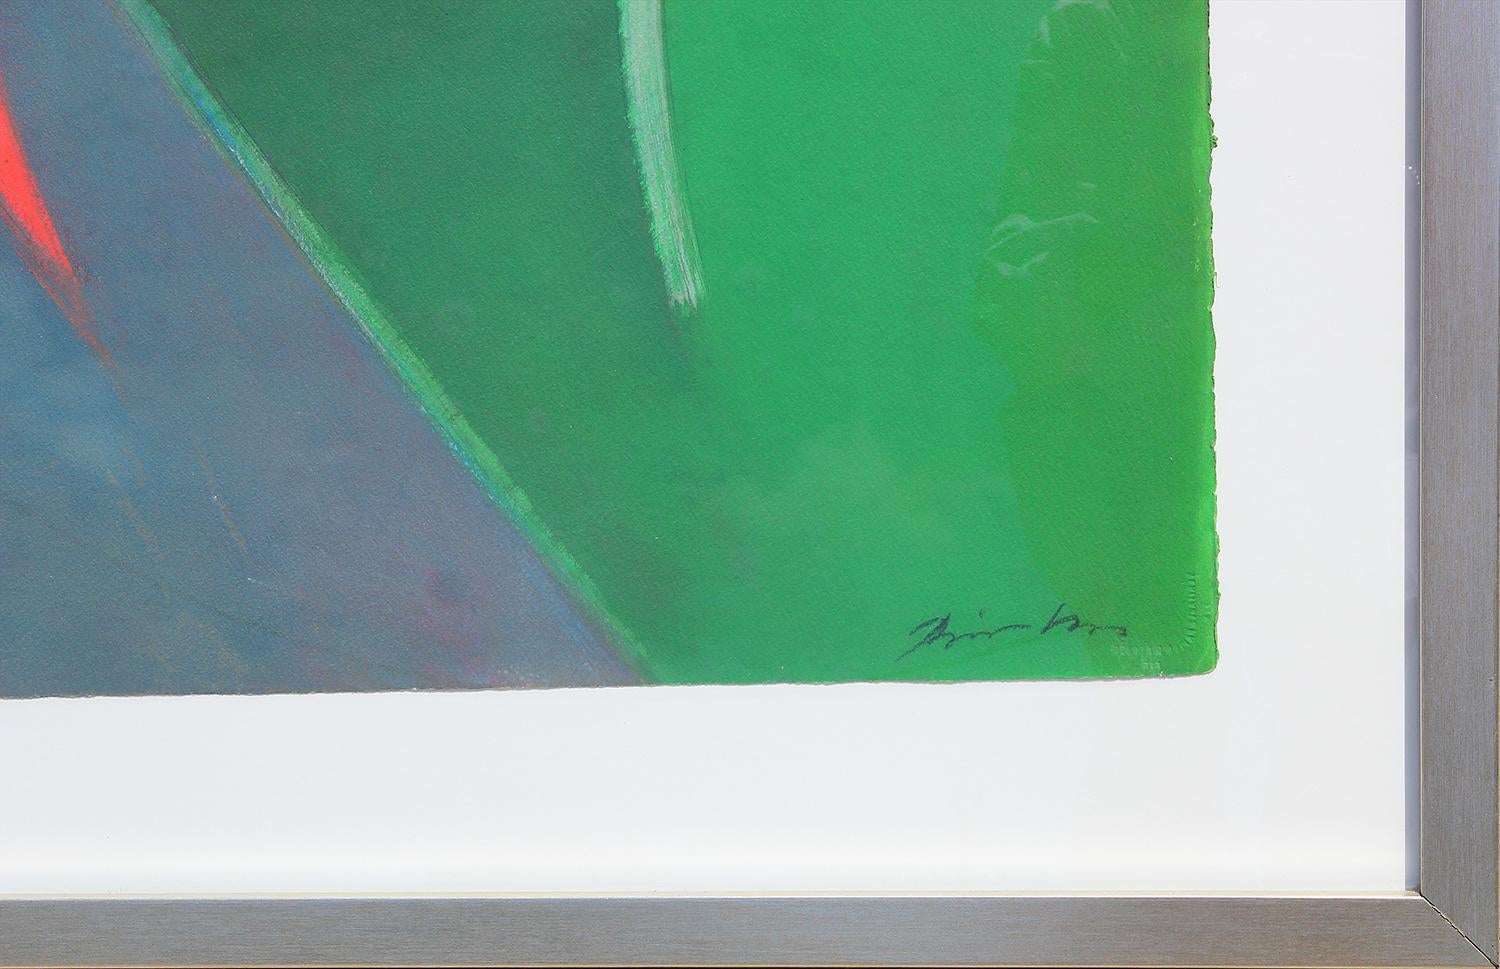 Peinture géométrique abstraite et colorée de l'artiste hongrois Béla Birkás. Peinture abstraite aux tons verts avec des accents jaunes, bleus et rouges formant diverses formes aléatoires. Signé par l'artiste en bas à droite. Encadré et monté dans un